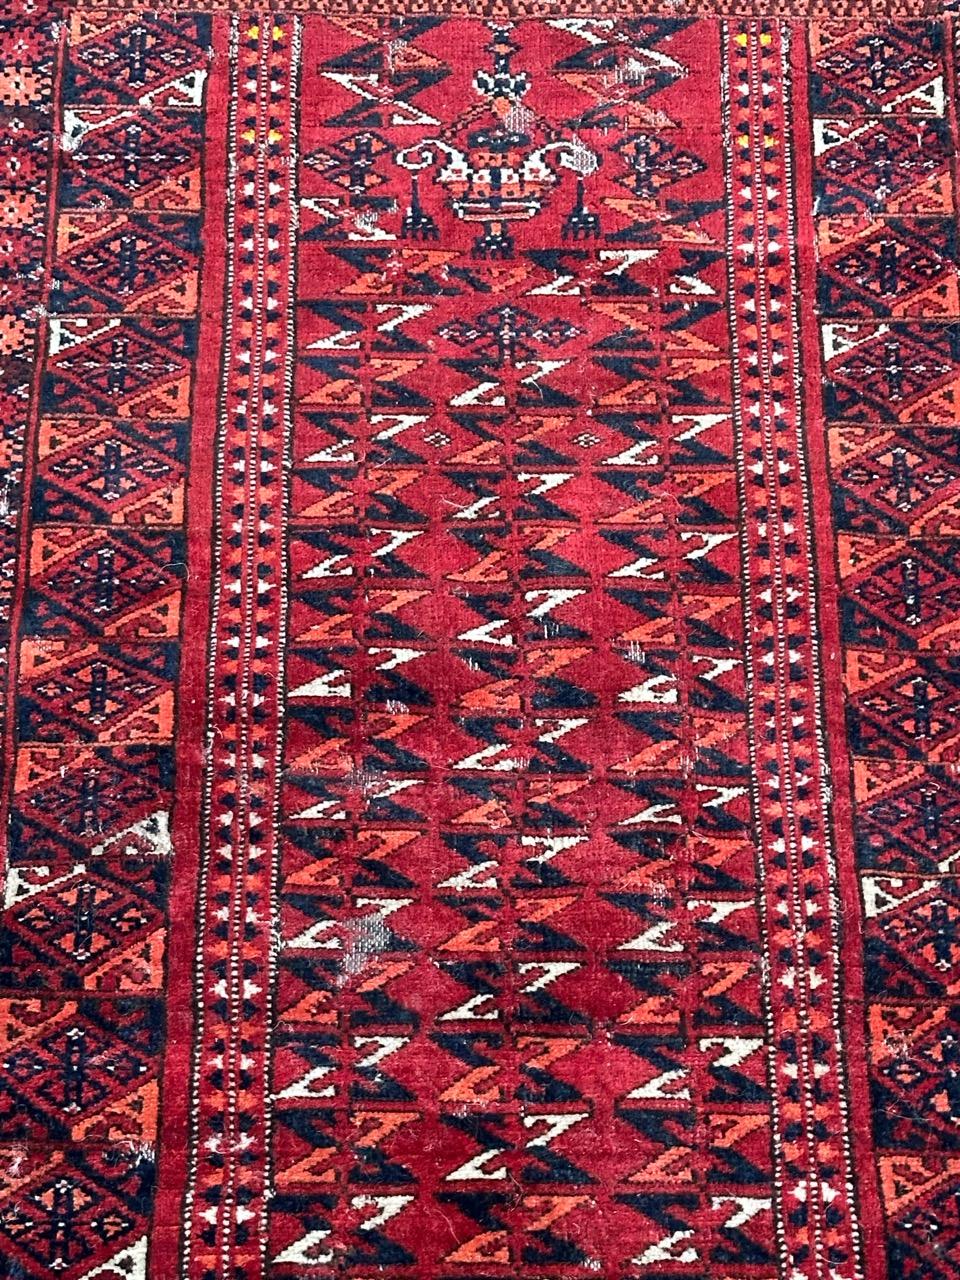 Hübscher antiker turkmenischer Stammesteppich mit schönem ungewöhnlichem Design, oben mit zwei Konstruktionen und geometrischen Stammesmustern an anderen Stellen, und mit schönen natürlichen Farben, vollständig und fein handgeknüpft mit Wolle auf